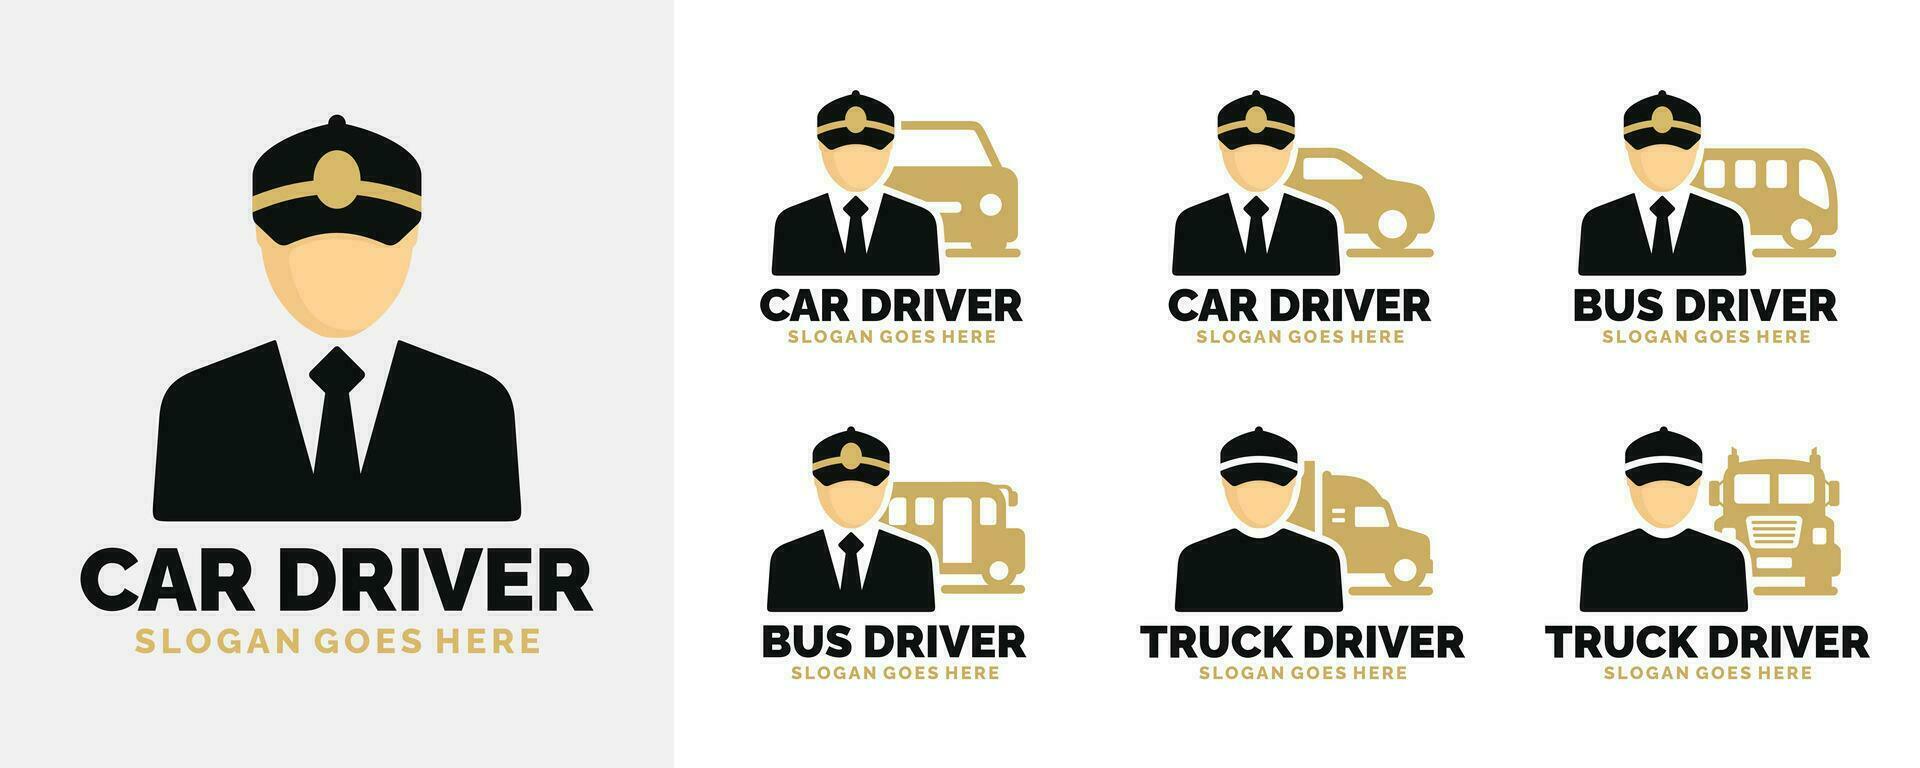 Car driver logo set design vector illustration